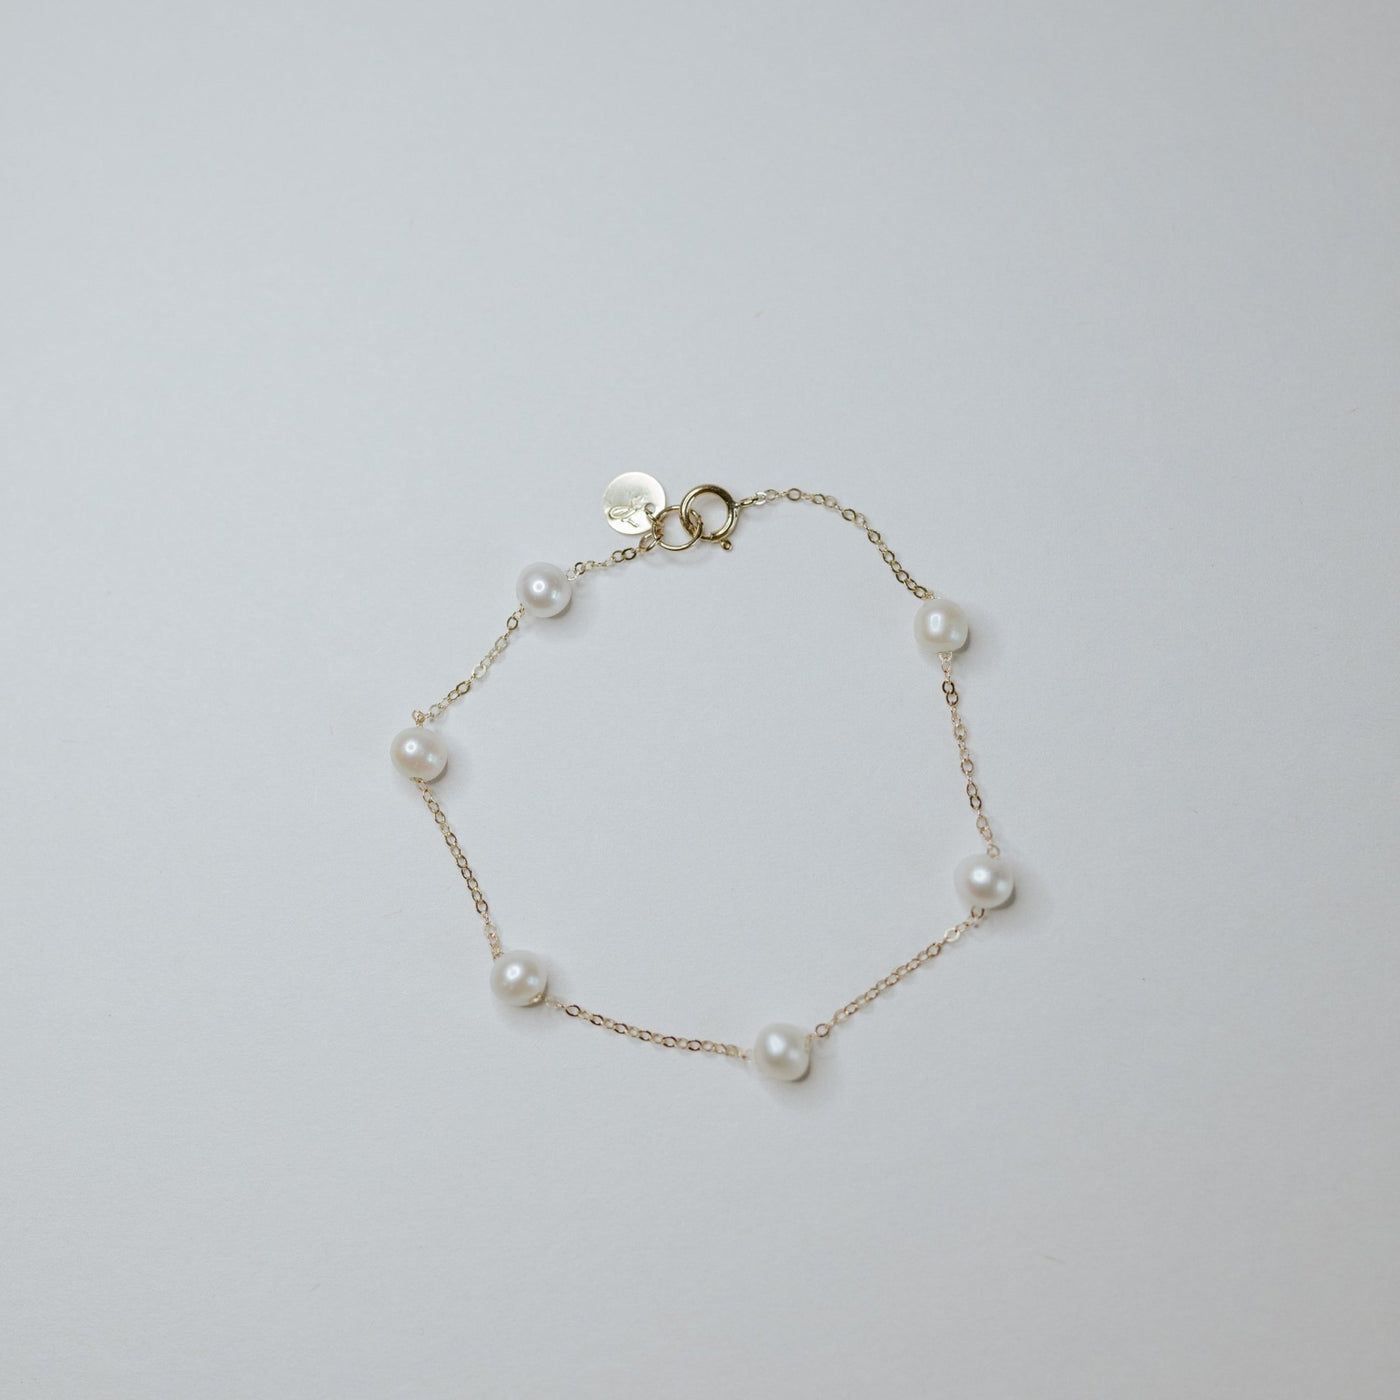 Penzing Bracelet - Jillian Leigh Jewellery - bracelets